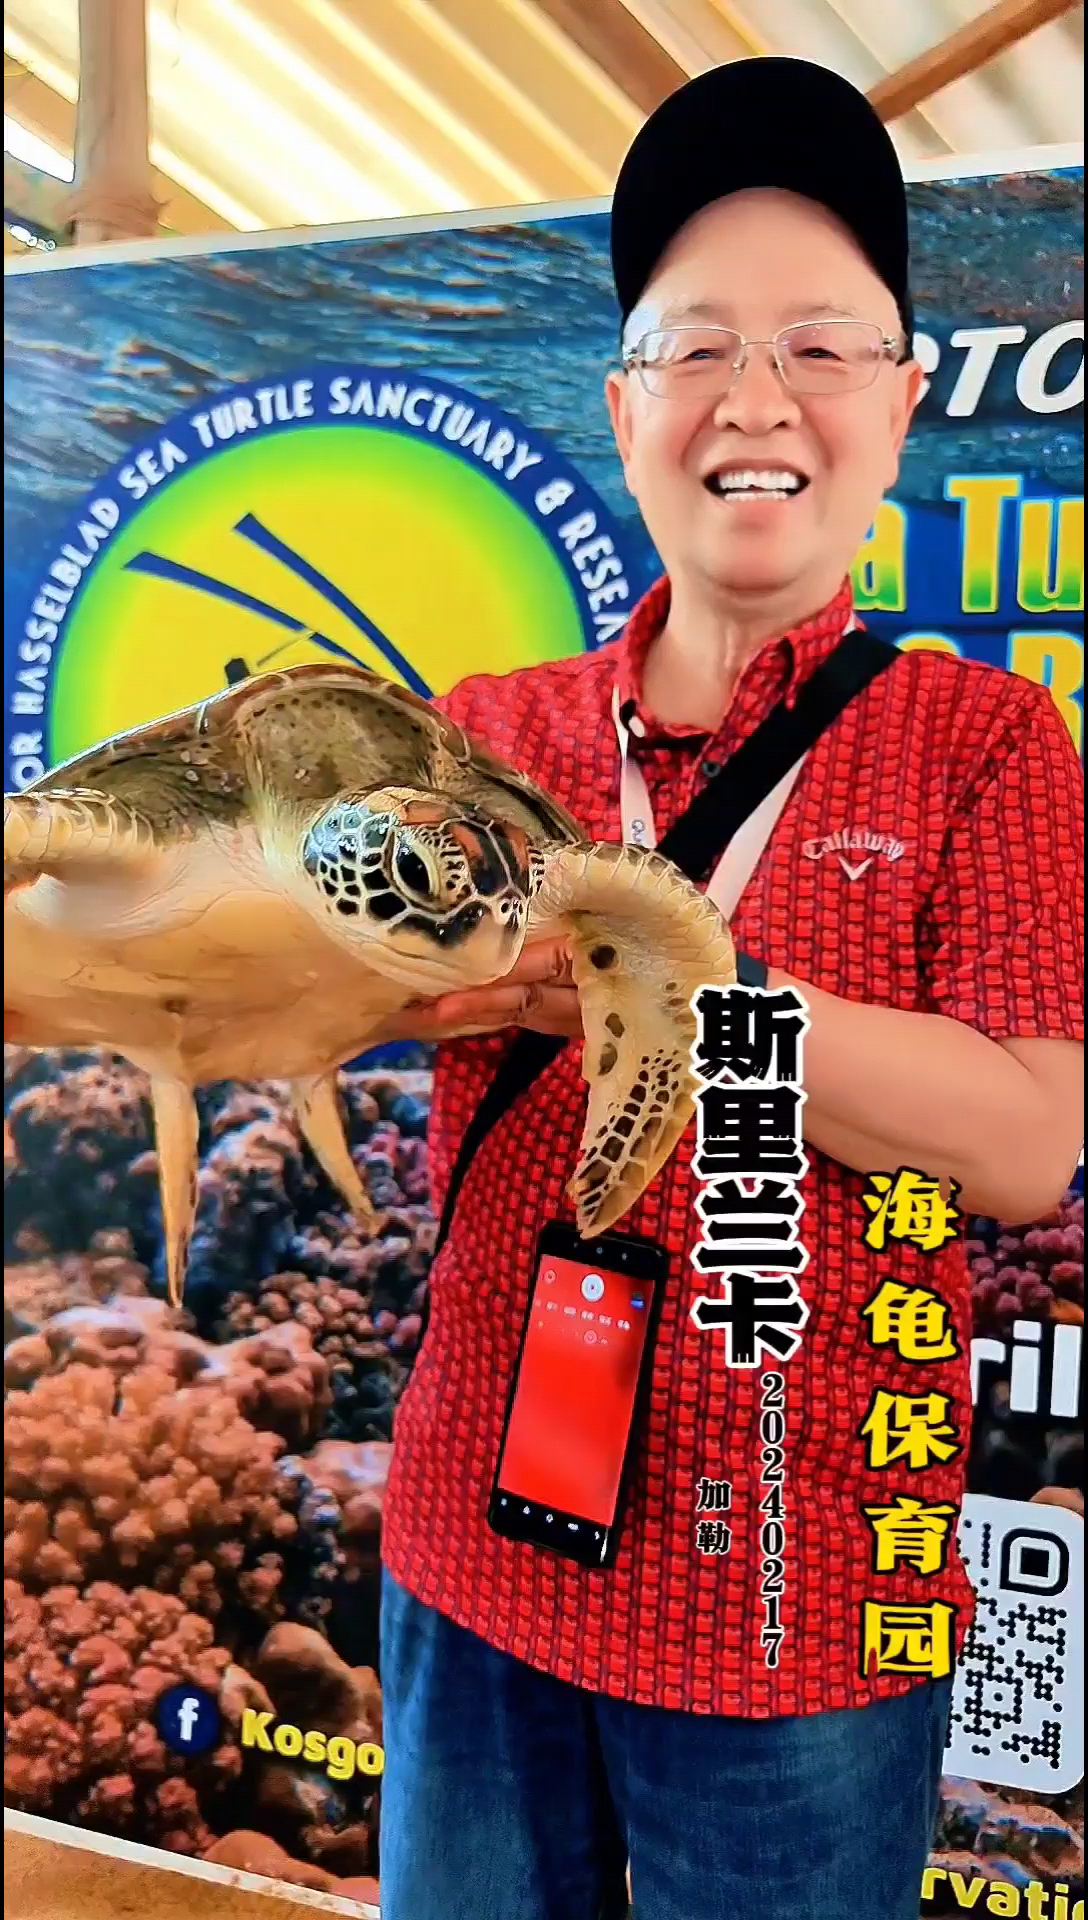 参观印度洋海龟保育园